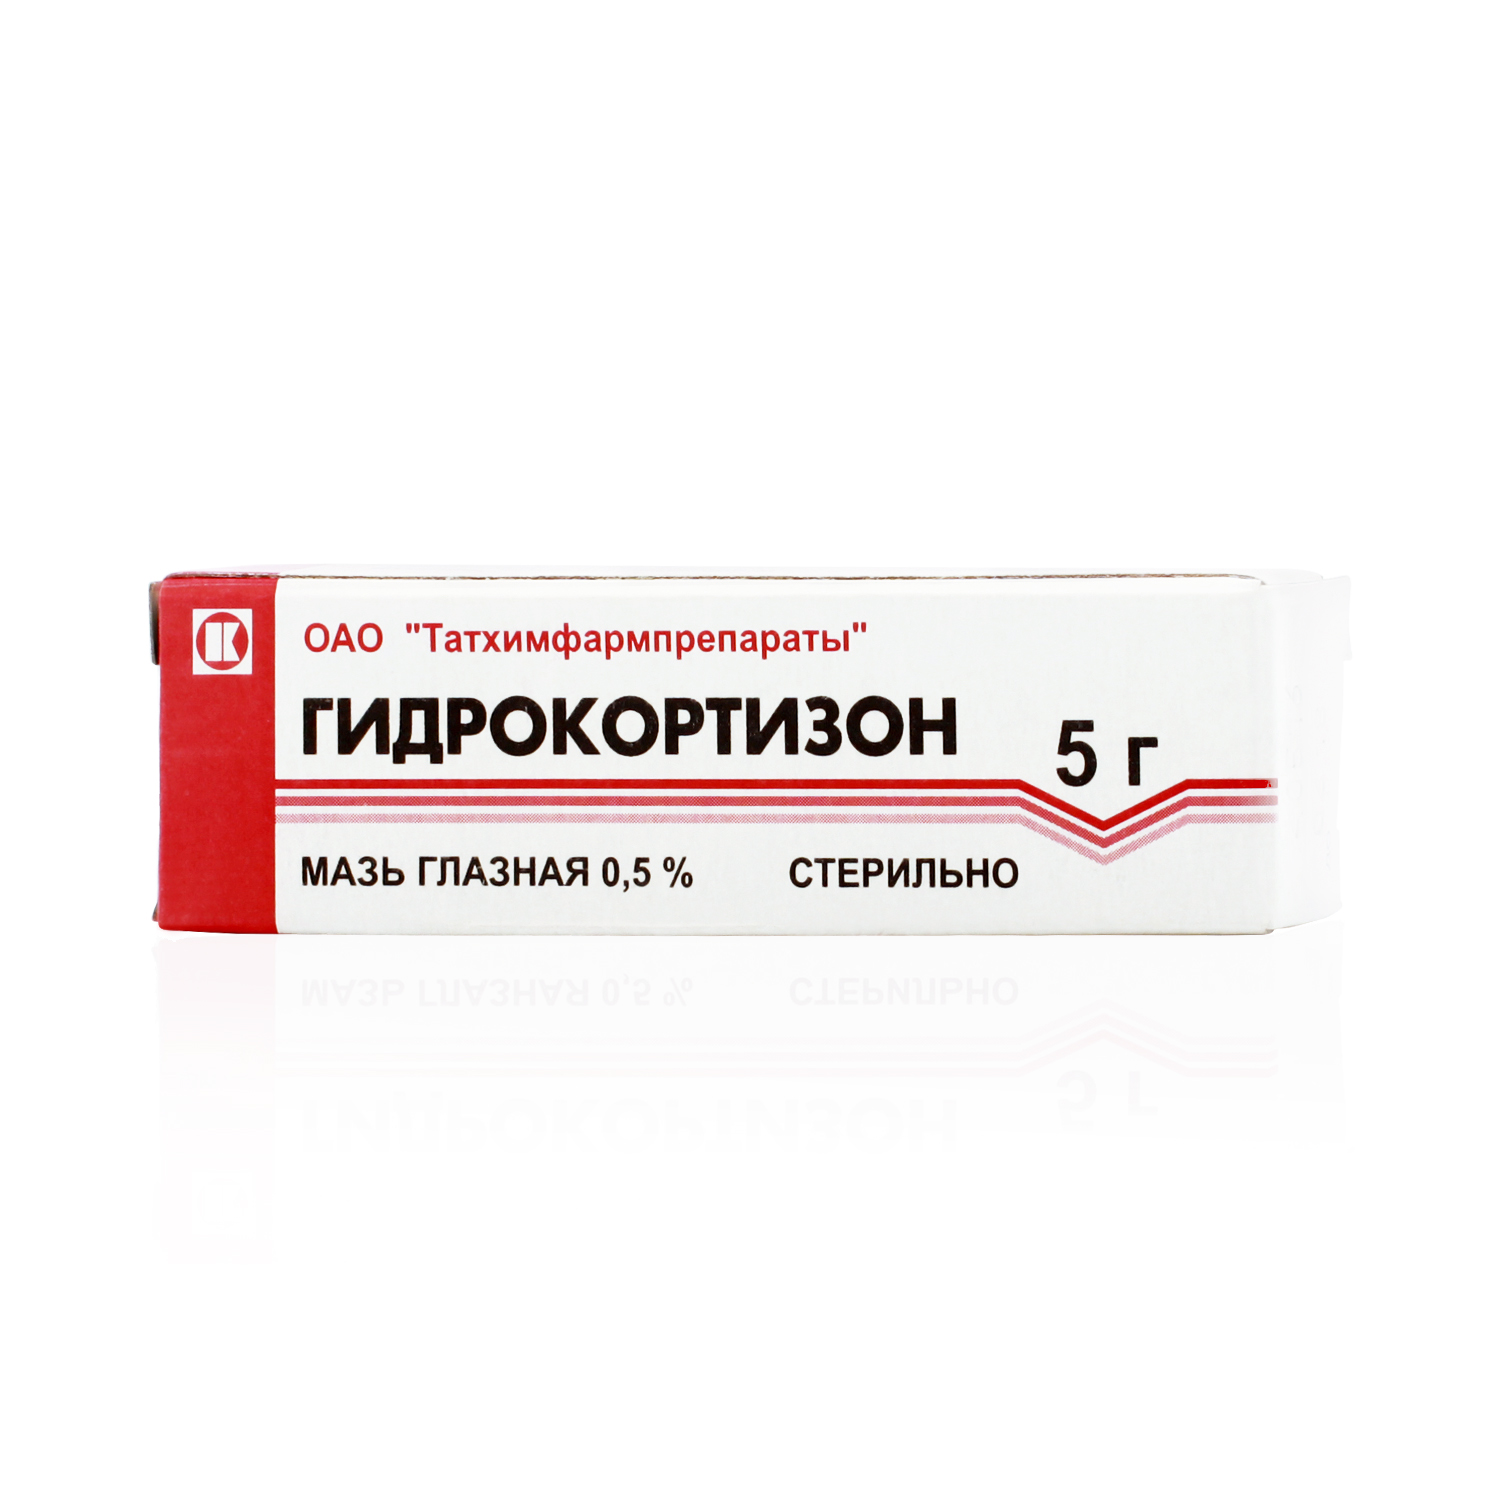 Гидрокортизон Мазь глазная 0,5 % 5 г купить в Красногорске, цена 58,0 руб, доставка лекарств в аптеку рядом